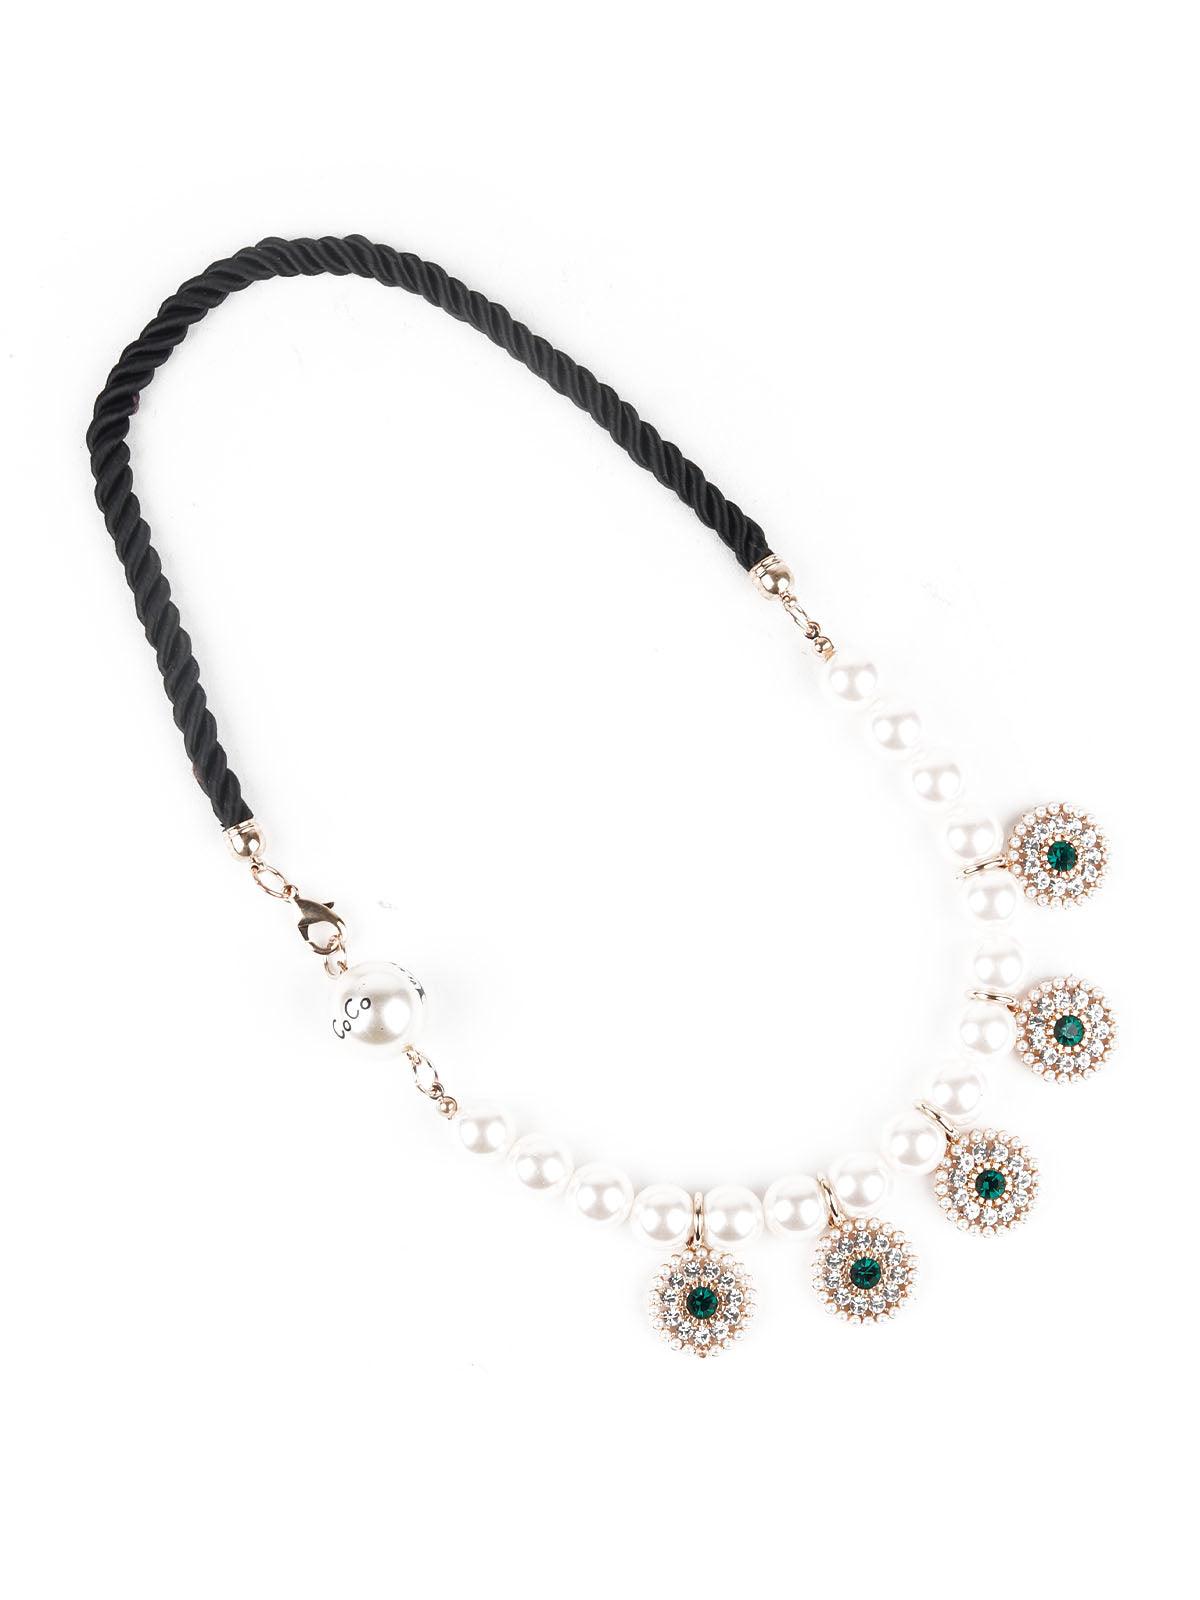 Women's Delicate Pearls Choker Neckpiece - Odette